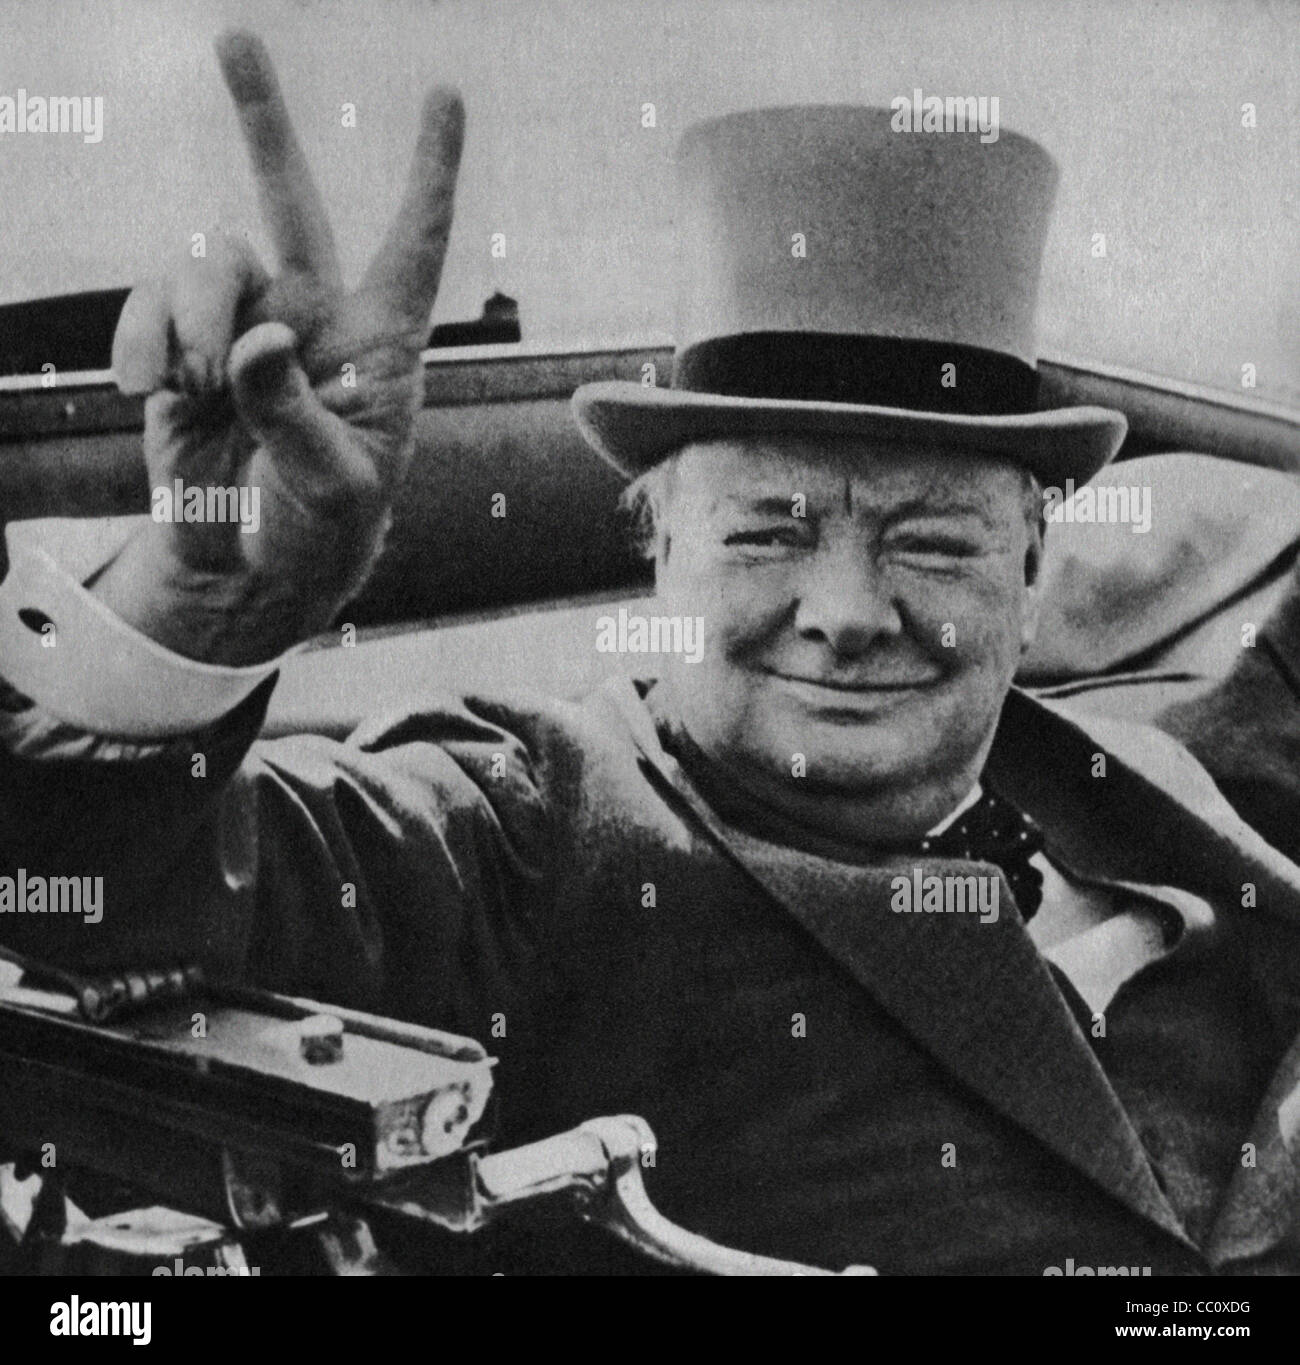 Chef de guerre britannique Winston Churchill avec son célèbre signe V de la victoire. Droit de la Presse Archives de presse Portrait Portrait (anciennement appelé Service Bureau) 1946 libre Banque D'Images